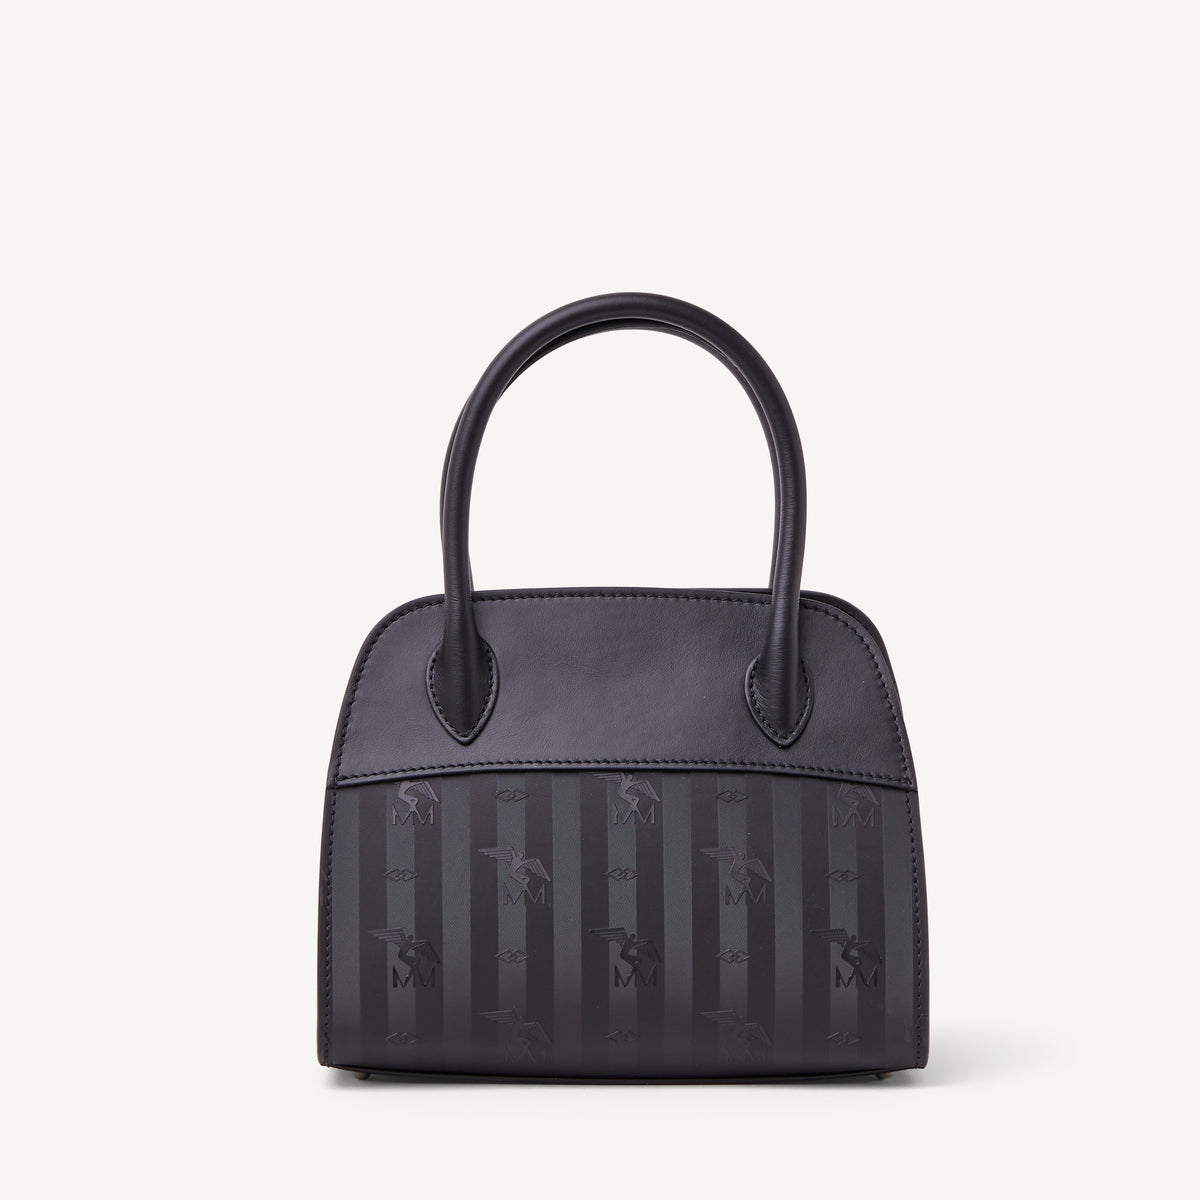 SOGLIO | Handtasche schwarz/silber - von hinten 